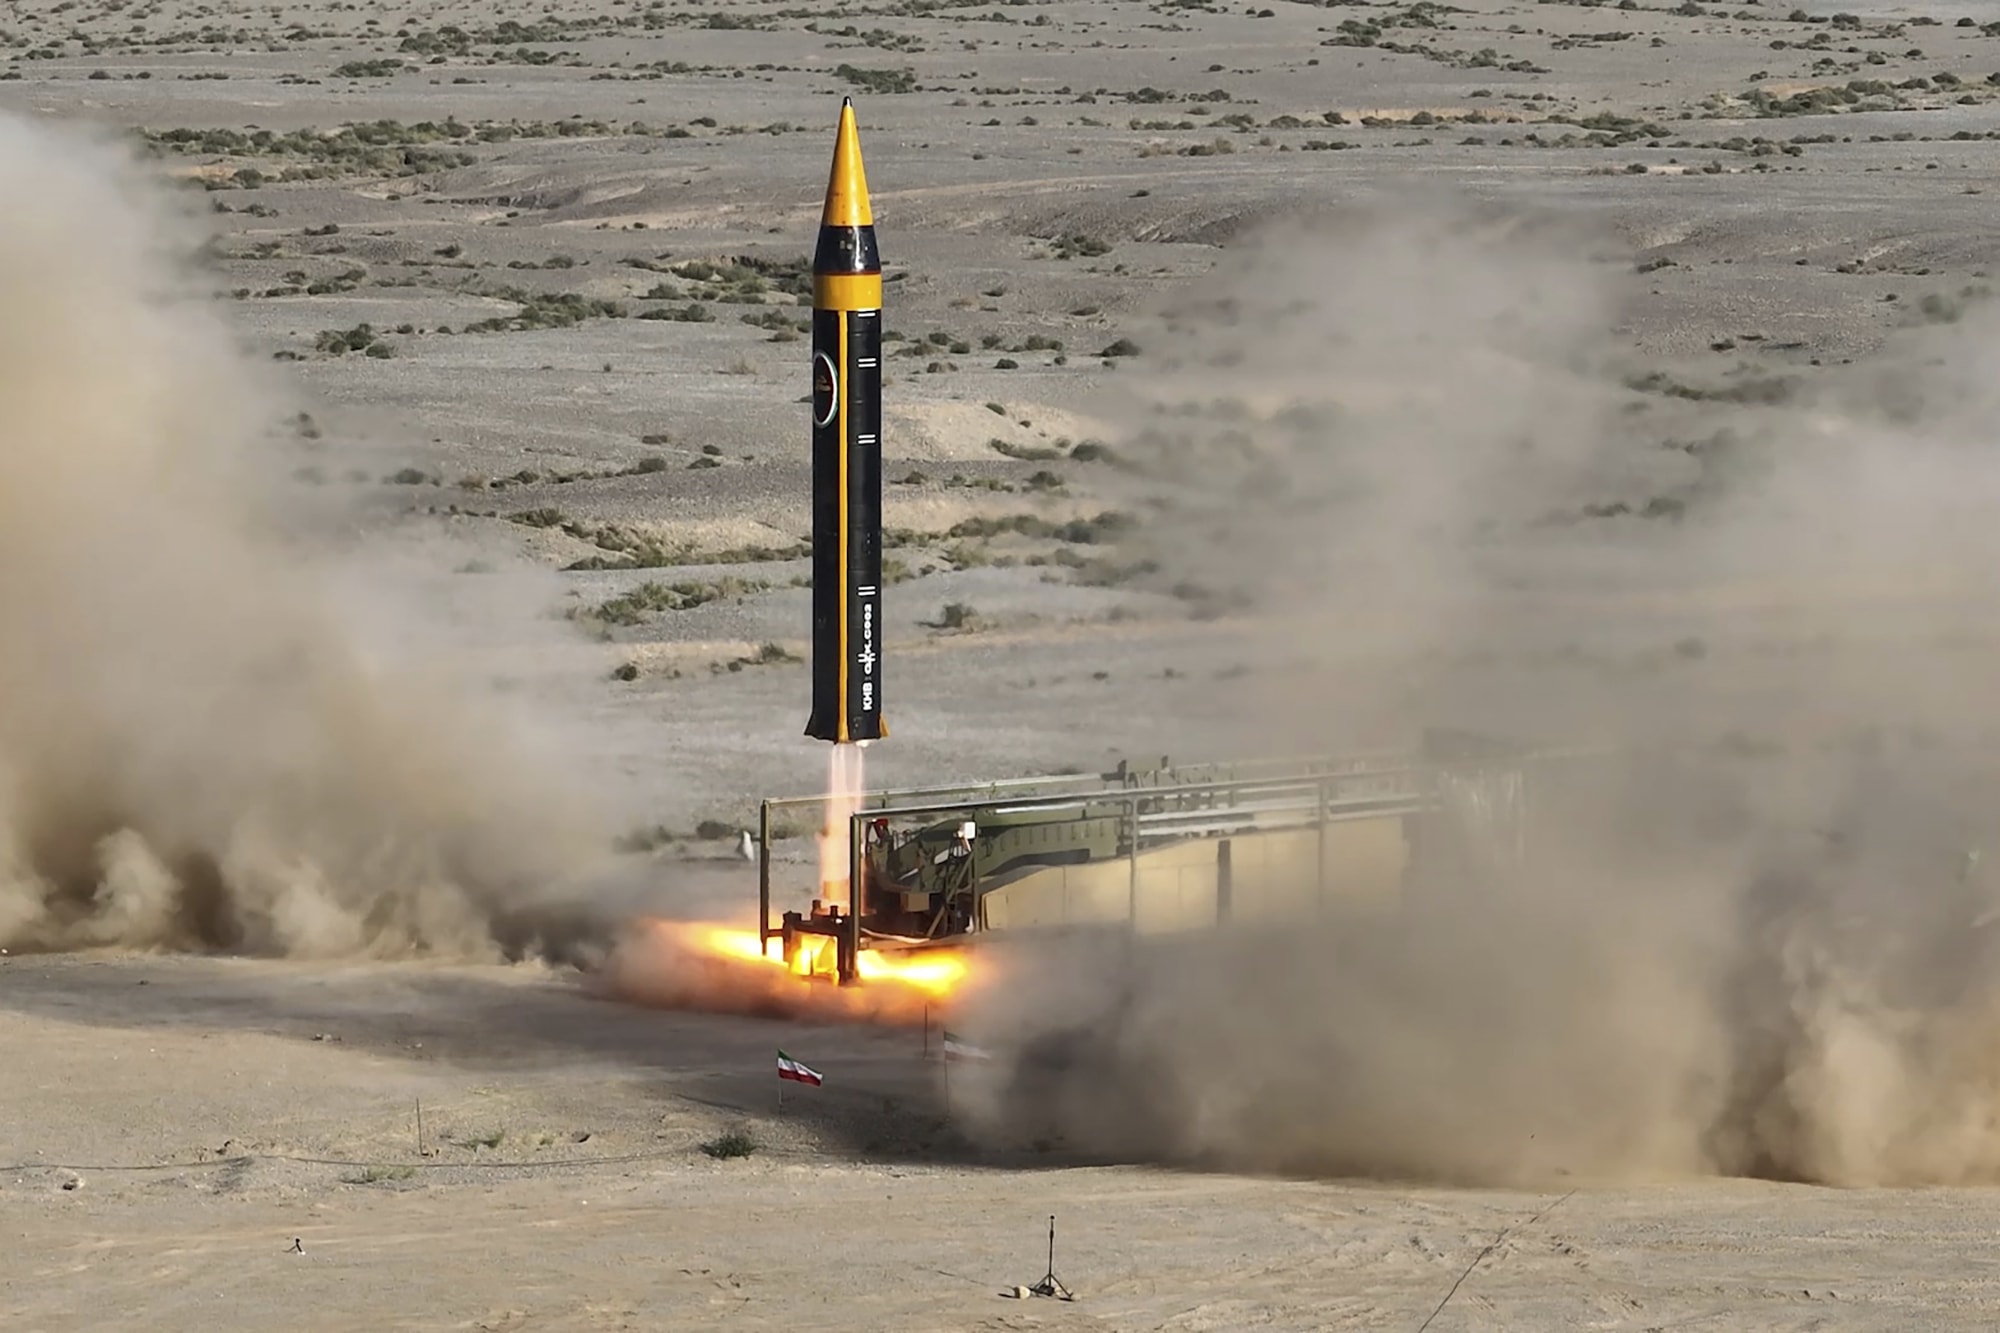 ניסוי טילים של משרד הביטחון האיראני במיקום לא ידוע, 25 במאי 2023 (צילום: Iranian Defense Ministry via AP)